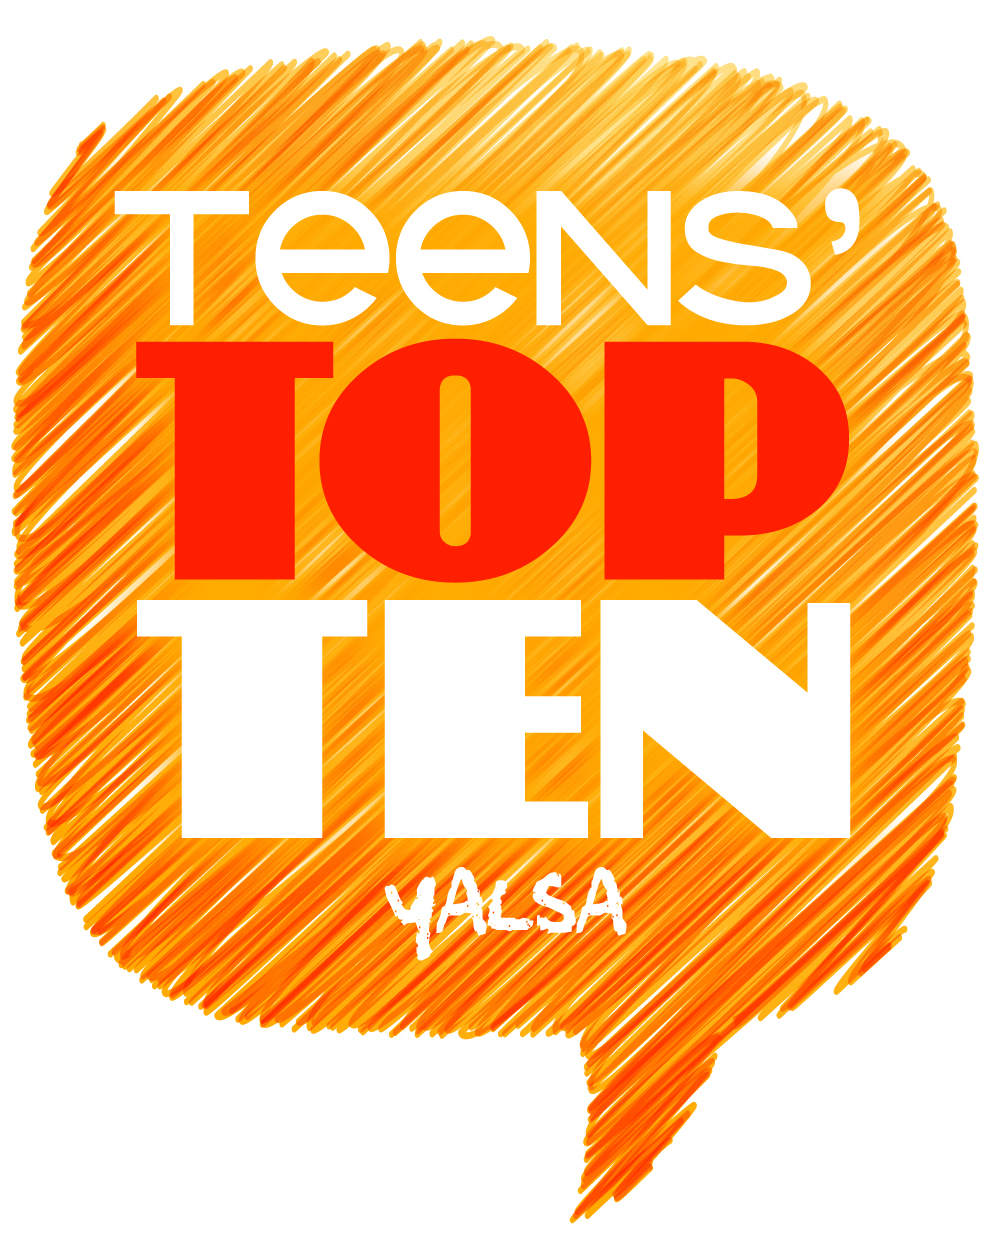 Teens Top 10